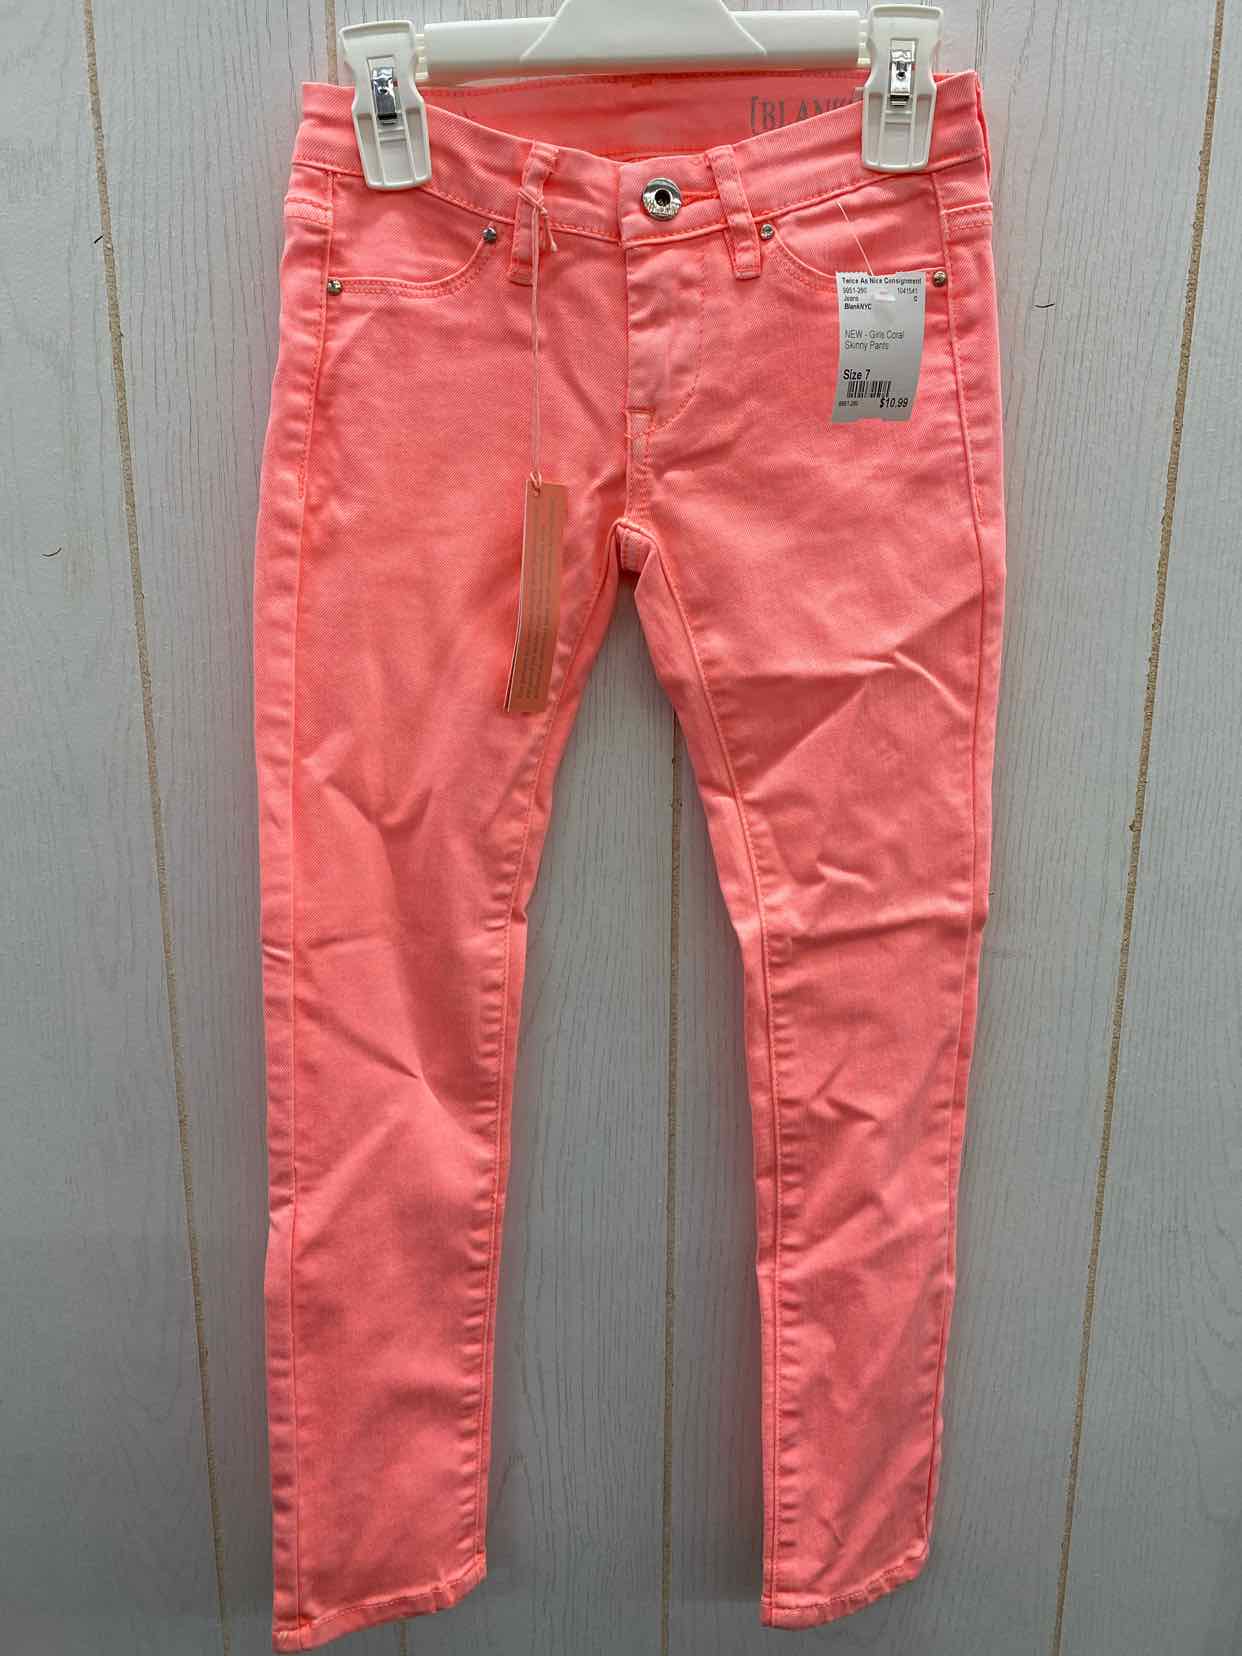 BlankNYC Girls Size 7 Jeans